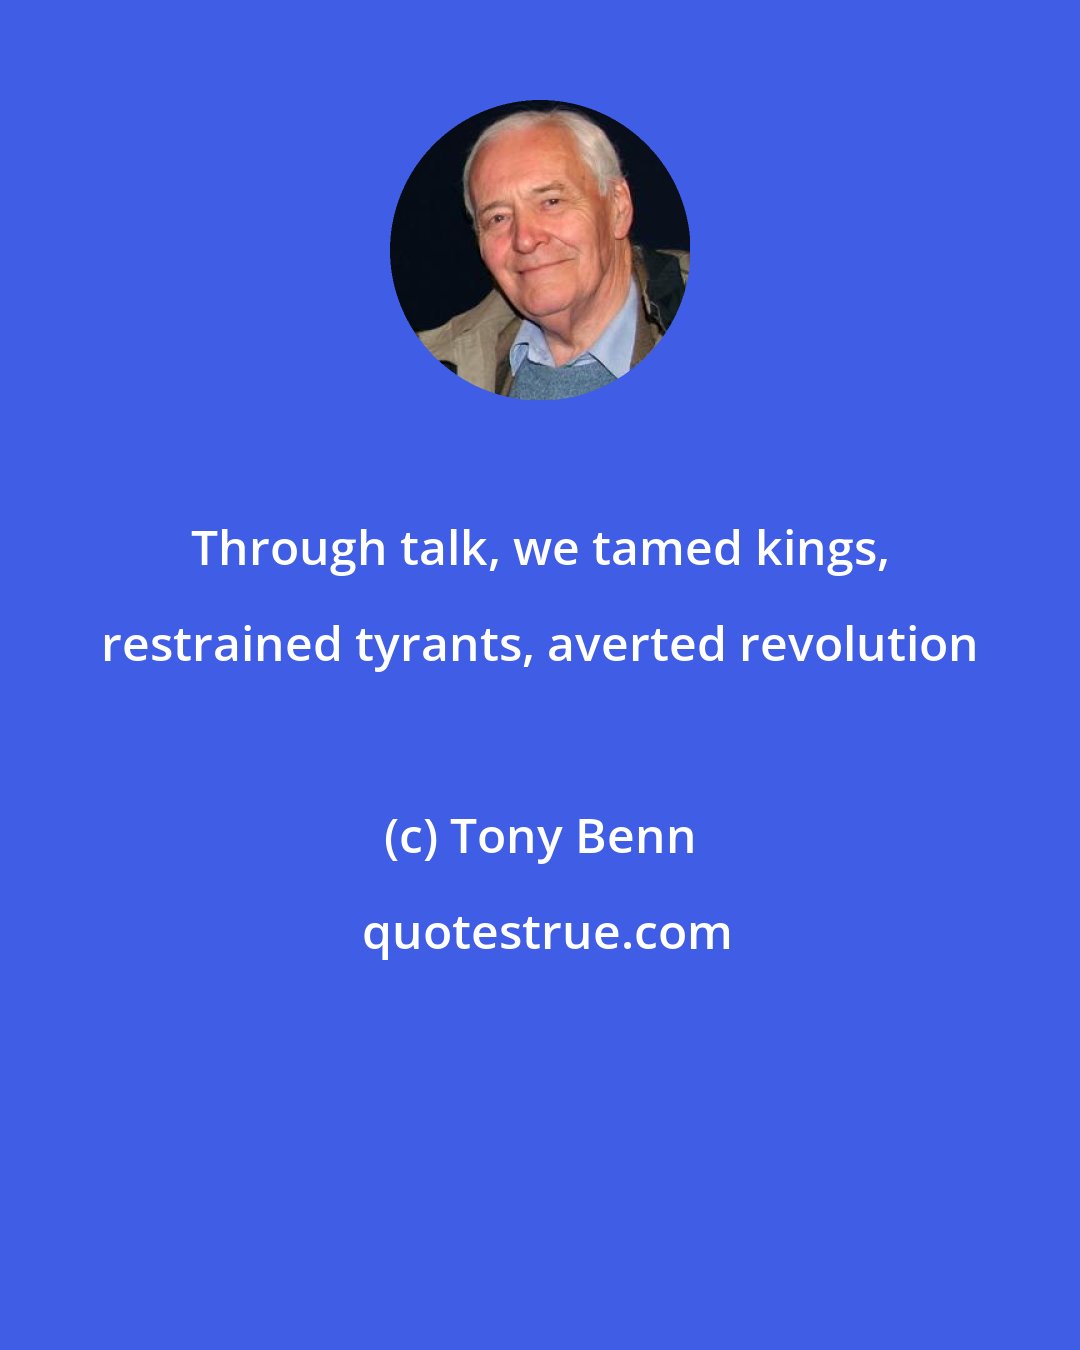 Tony Benn: Through talk, we tamed kings, restrained tyrants, averted revolution